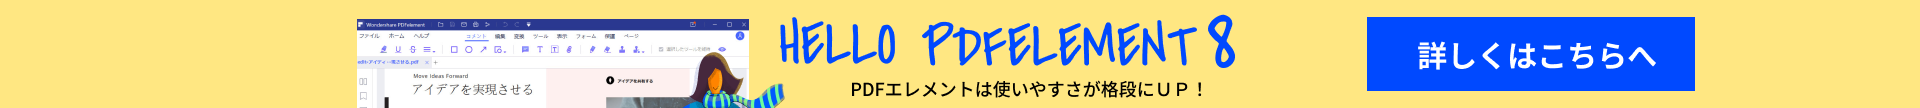 [公式]PDFの作成・編集ならPDFエレメント - PDFelement 6購入ページ